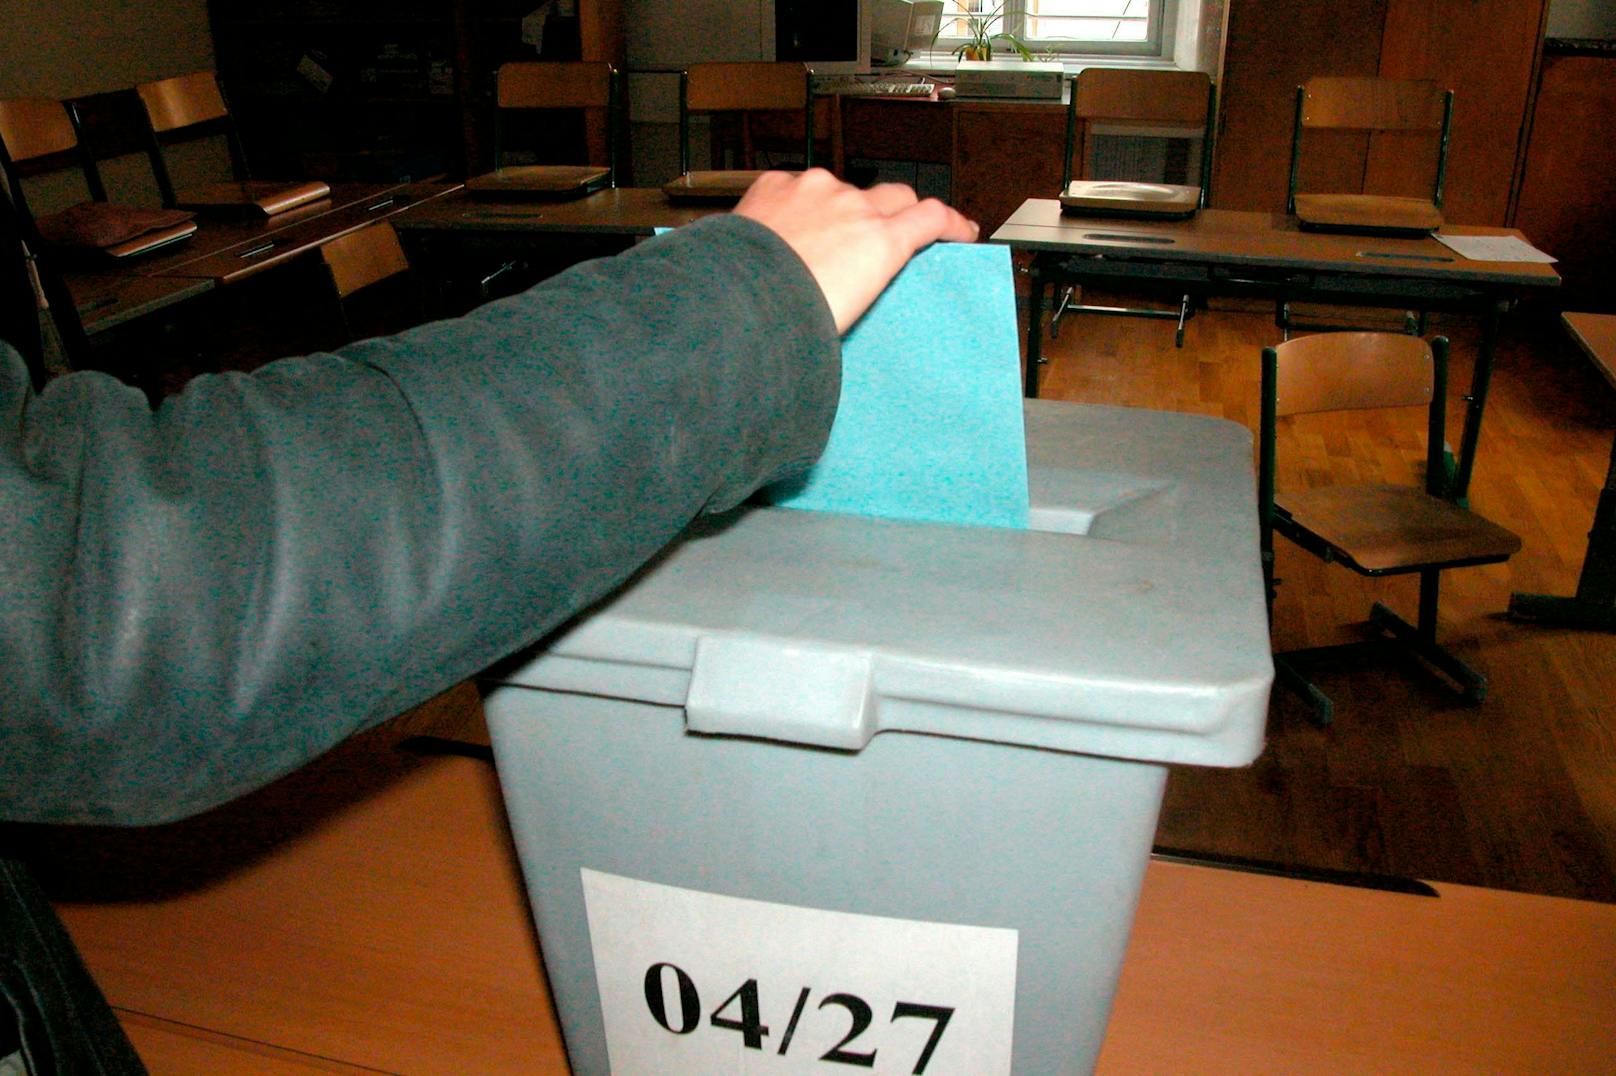 Bei der Gemeinderatswahl in Mutters am 27. Februar 2022 fehlen die Grünen. Sie wurden ausgeschlossen. (Symbolbild)